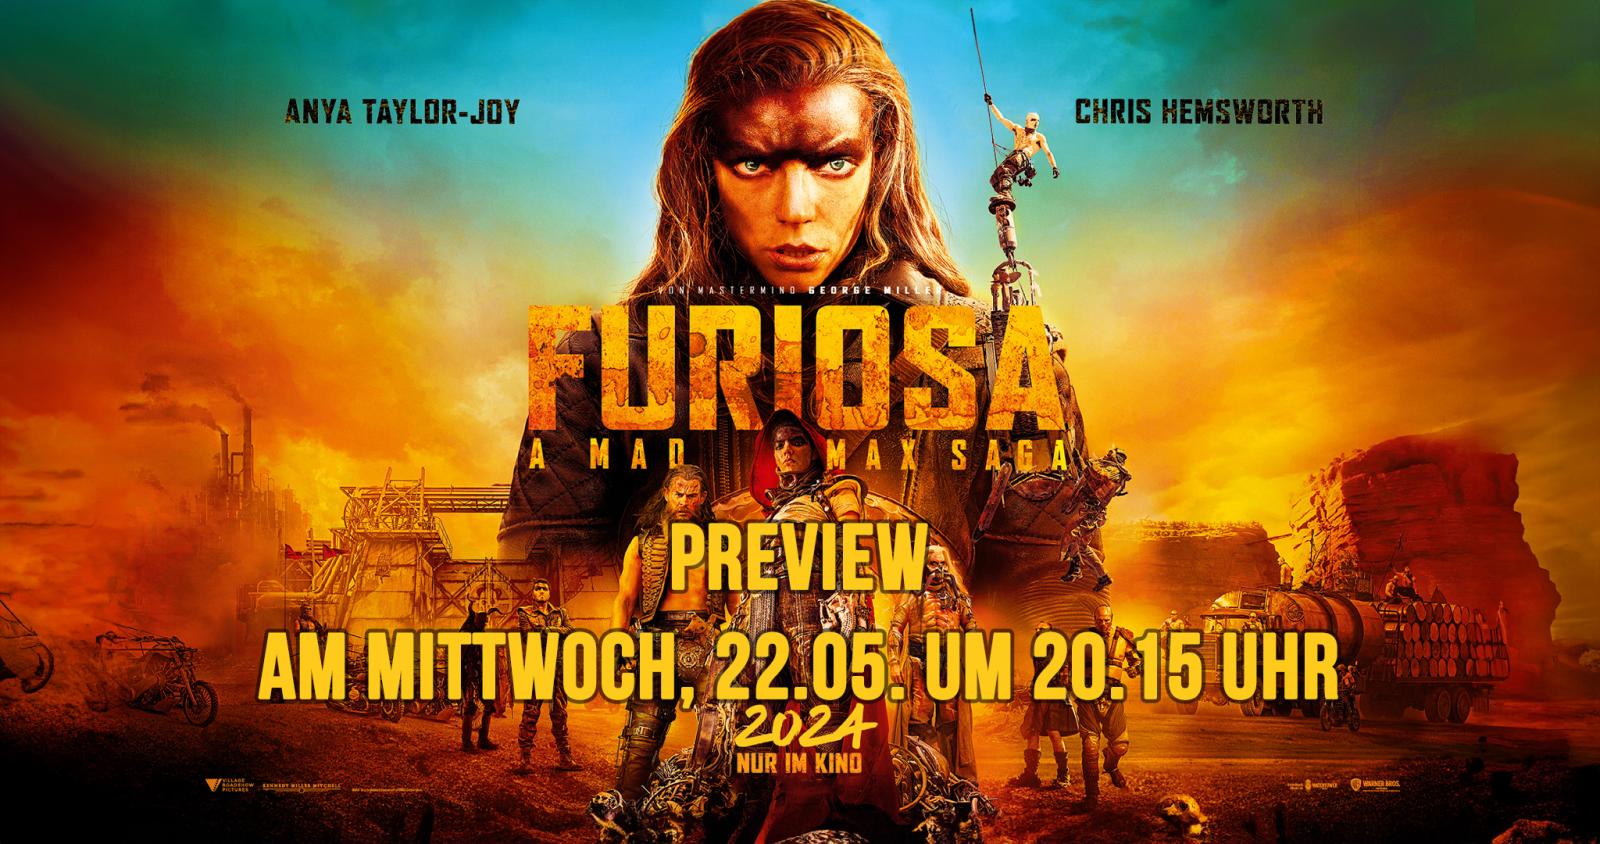 Preview: Furiosa: A Mad Max Saga